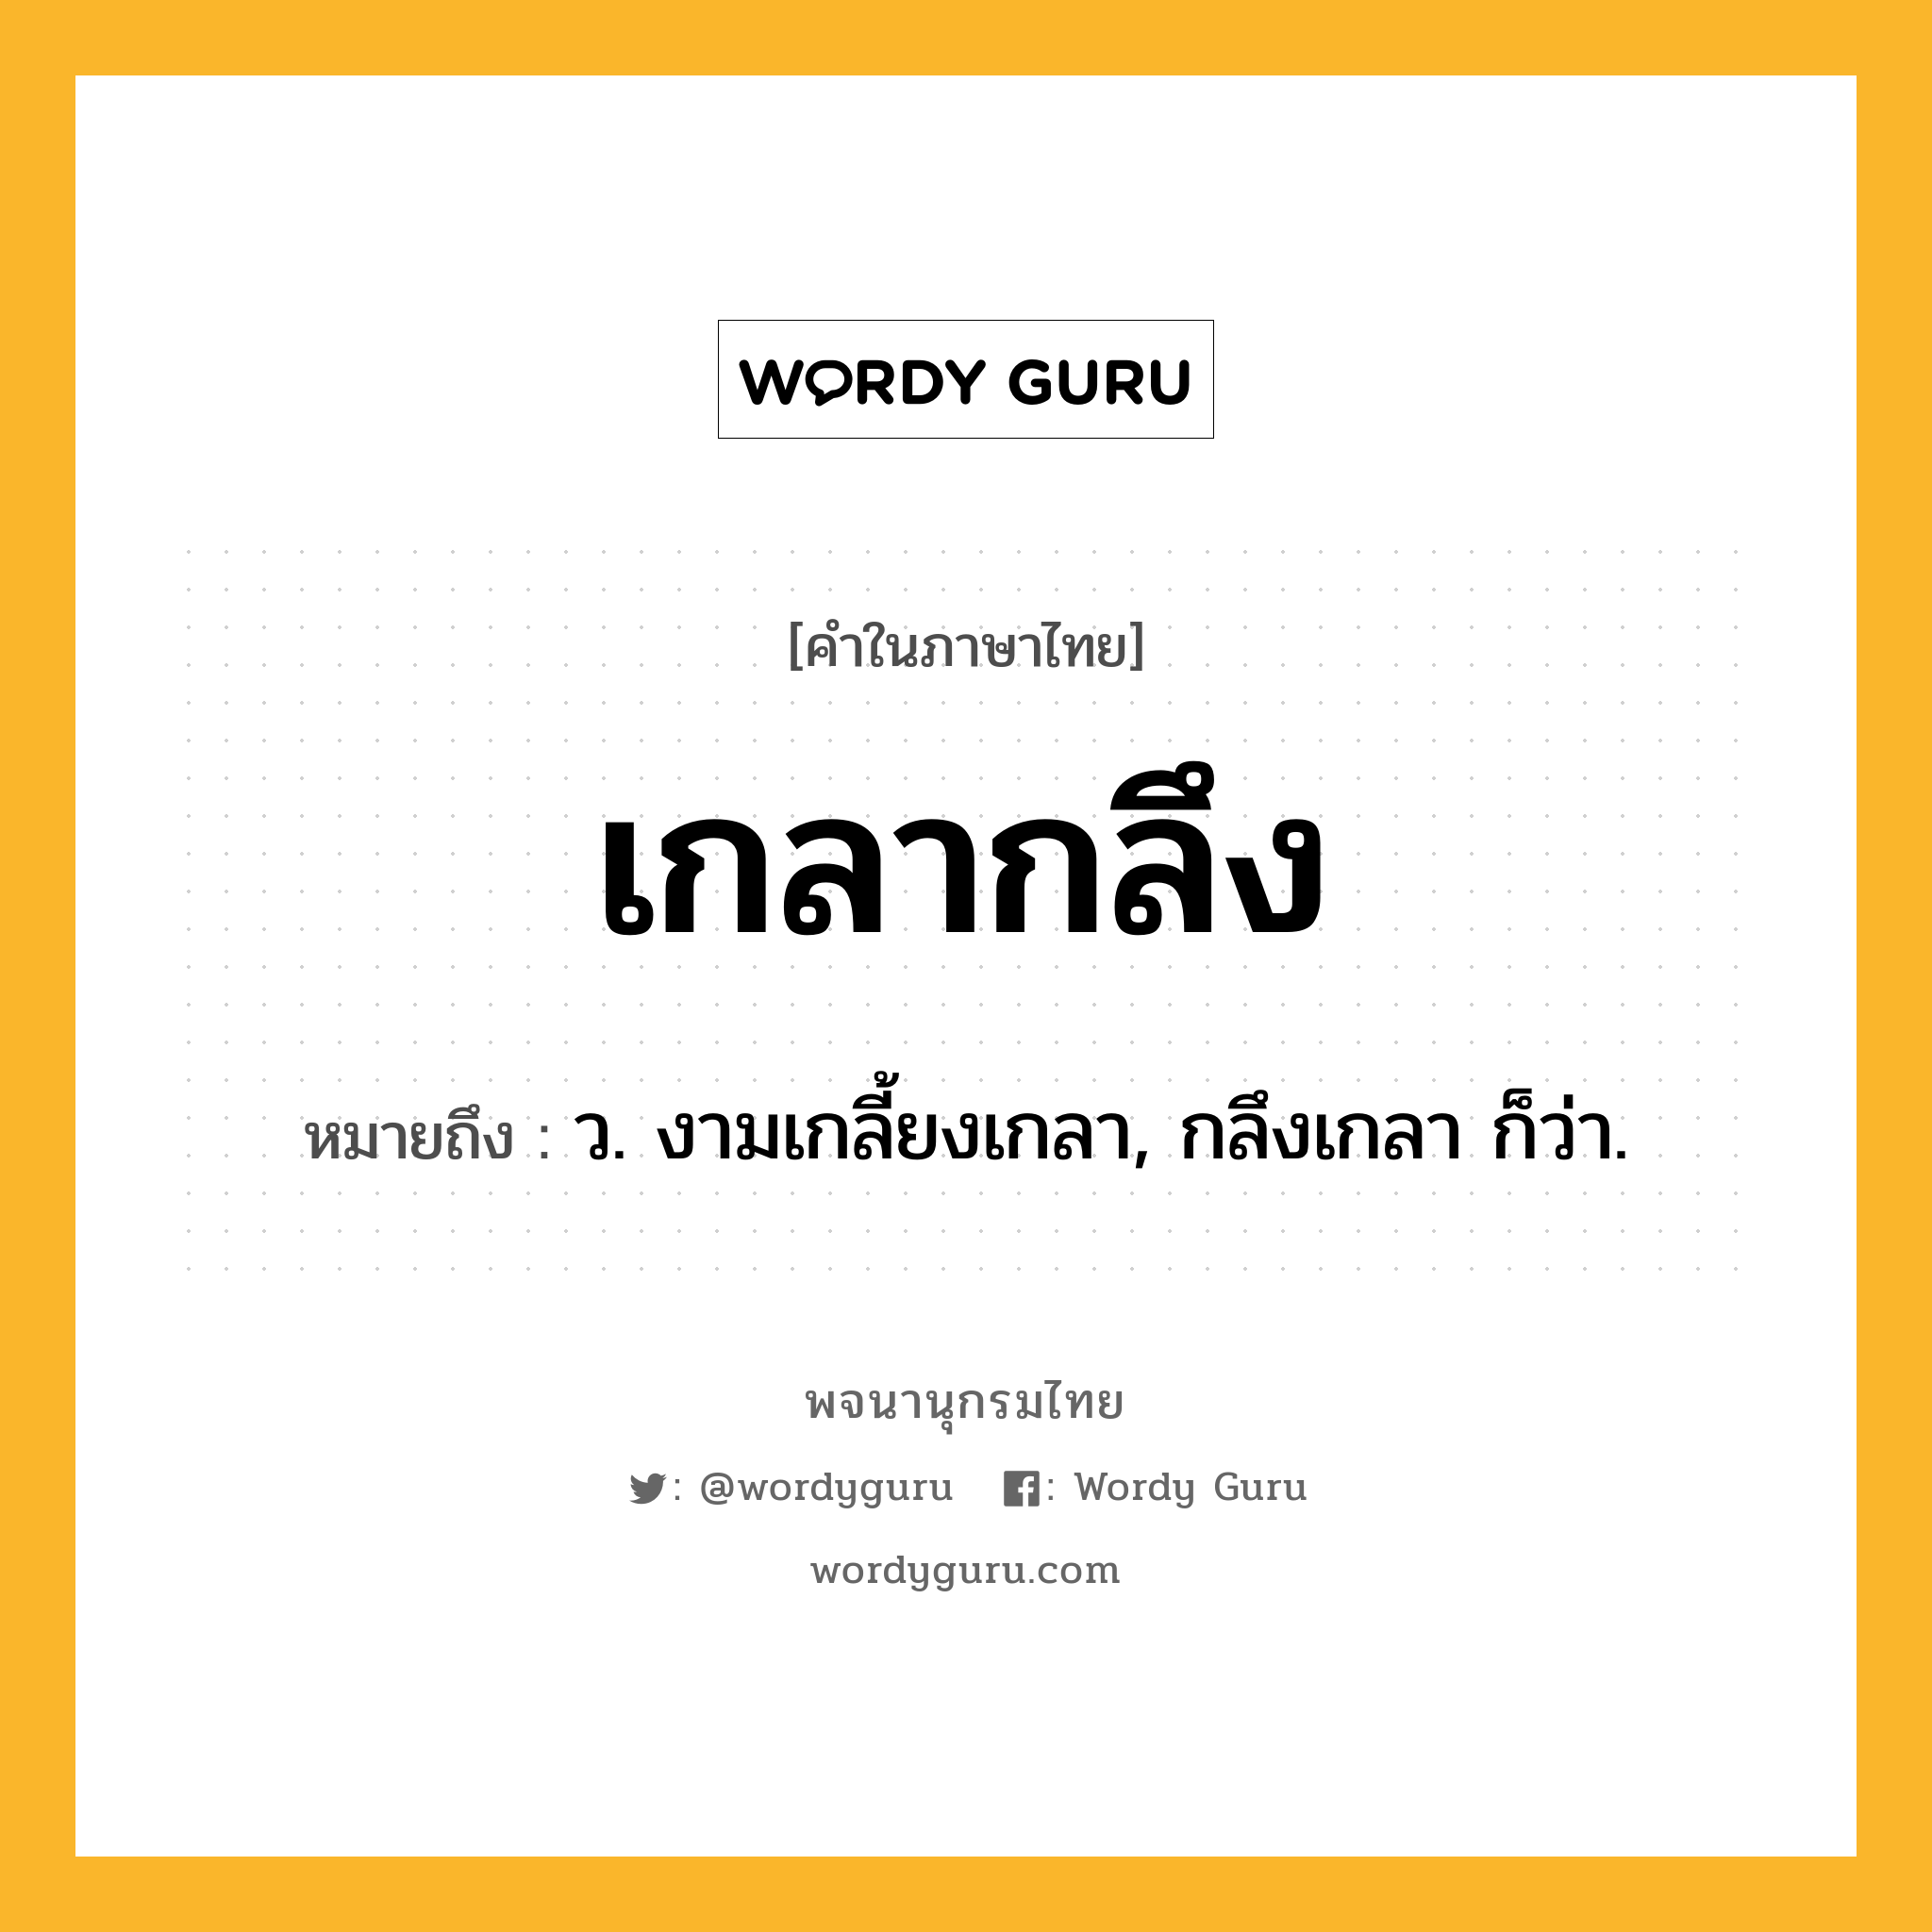 เกลากลึง ความหมาย หมายถึงอะไร?, คำในภาษาไทย เกลากลึง หมายถึง ว. งามเกลี้ยงเกลา, กลึงเกลา ก็ว่า.